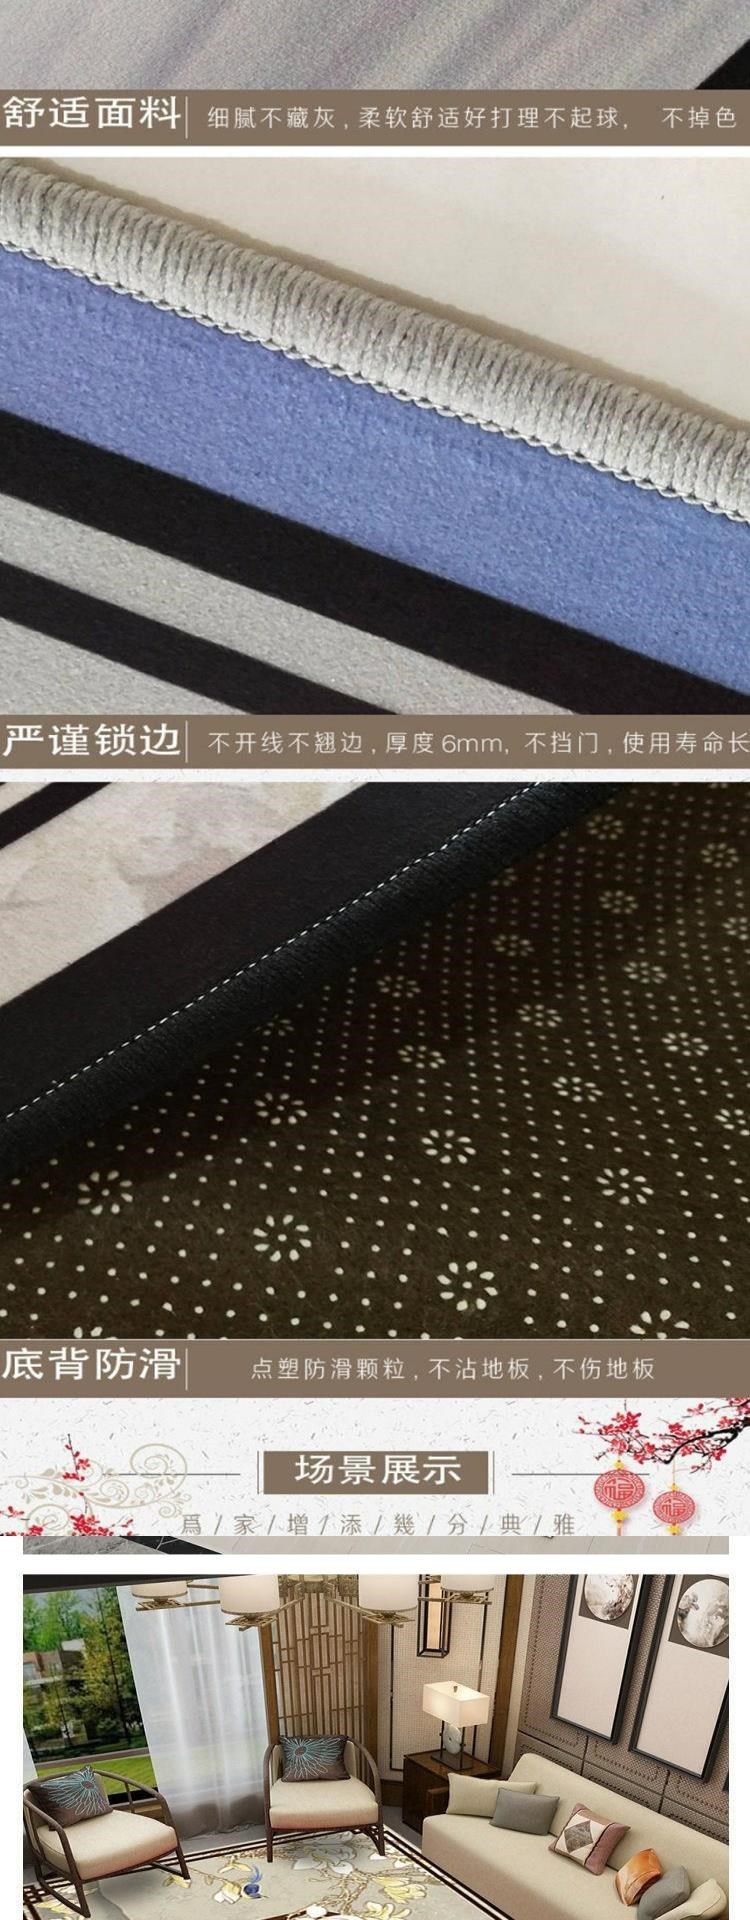 . Phong cách Trung Quốc mới cổ điển Trung Quốc thảm sứ màu xanh và trắng Thảm Trung Quốc phòng khách sofa bàn cà phê đệm phòng ngủ chăn đầu giường - Thảm